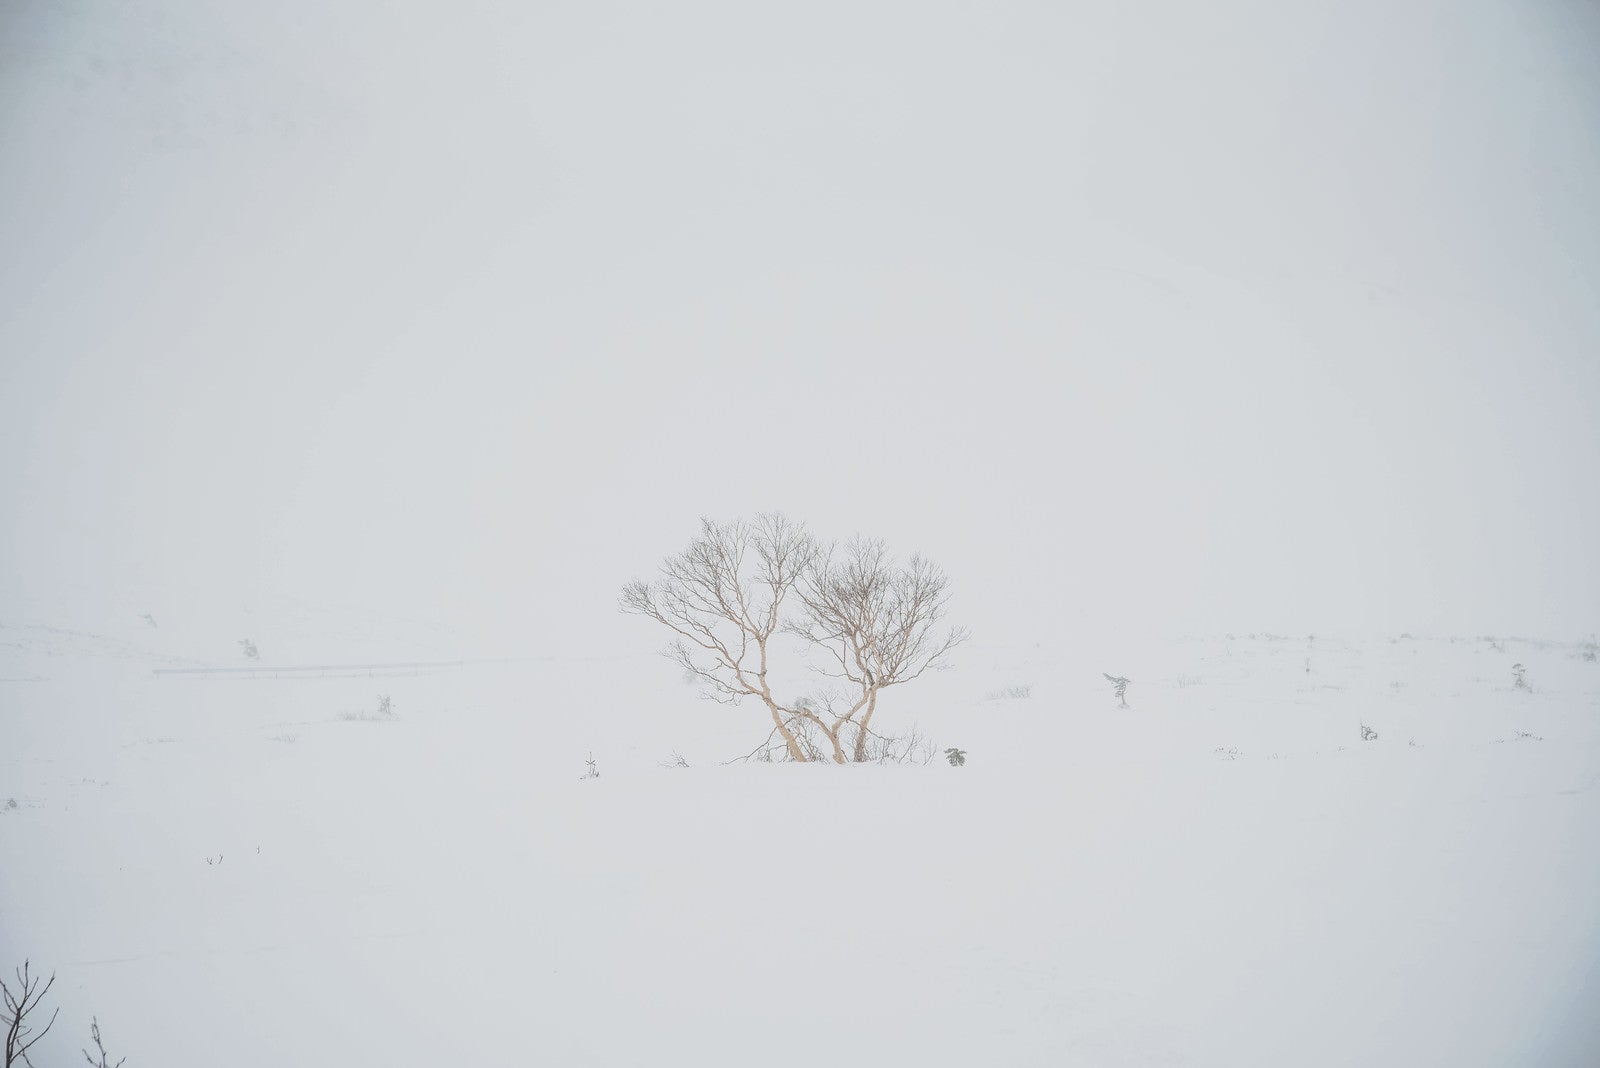 「視界不良の冬山で目印になる木」の写真